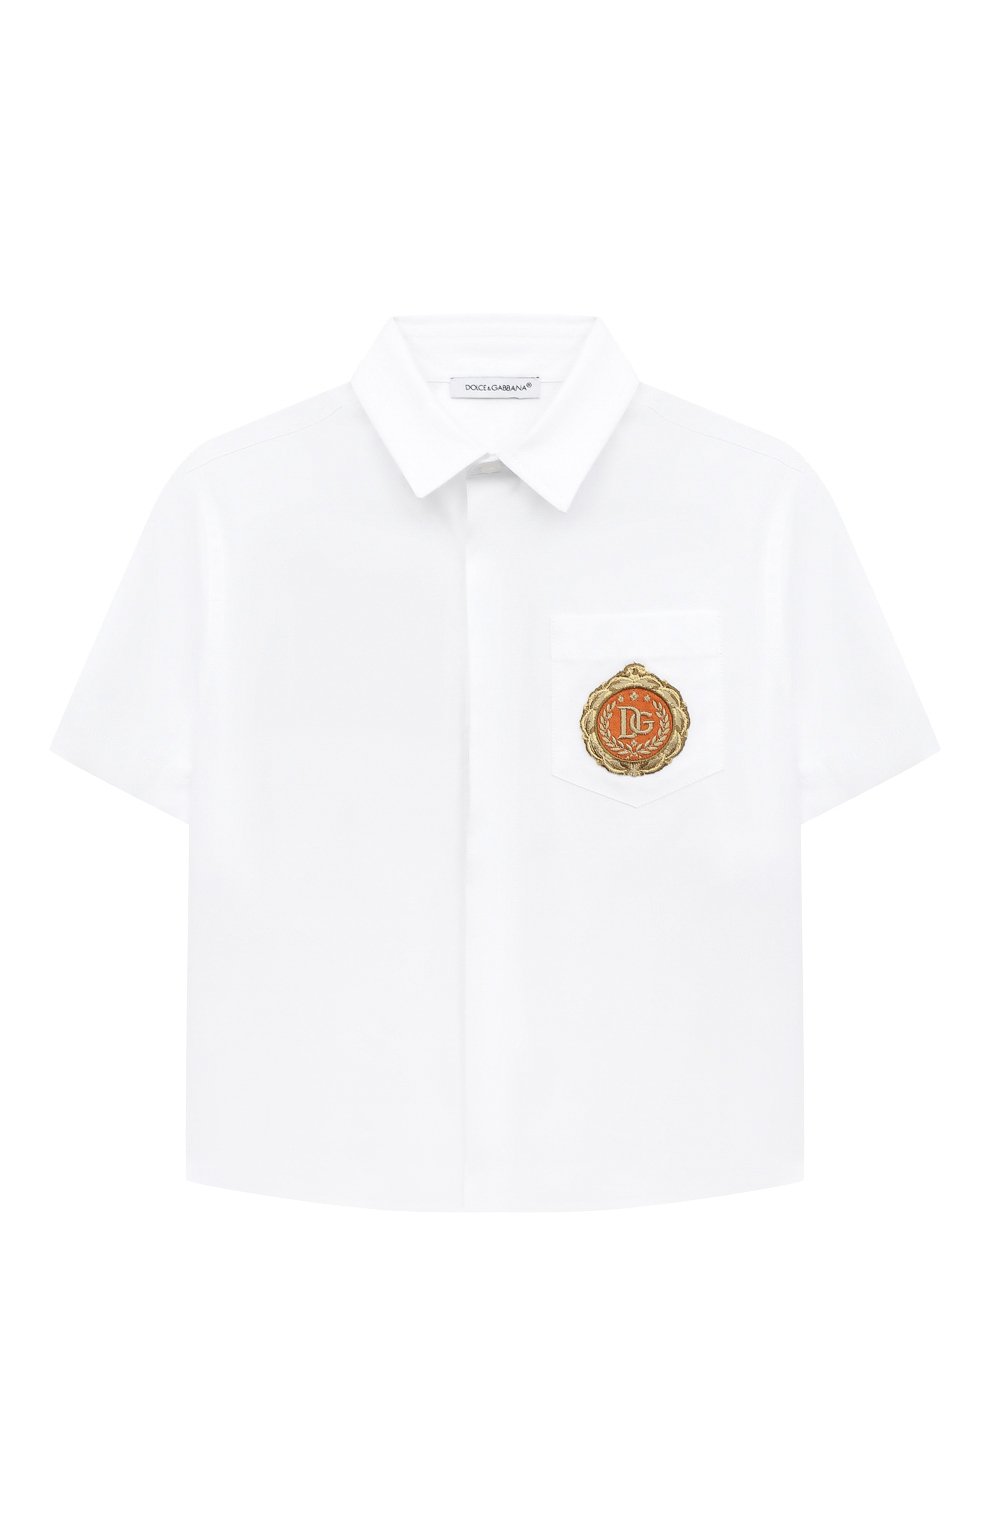 Рубашки Dolce & Gabbana, Сорочка с короткими рукавами Dolce & Gabbana, Италия, Белый, Хлопок: 100%;, 11277602  - купить